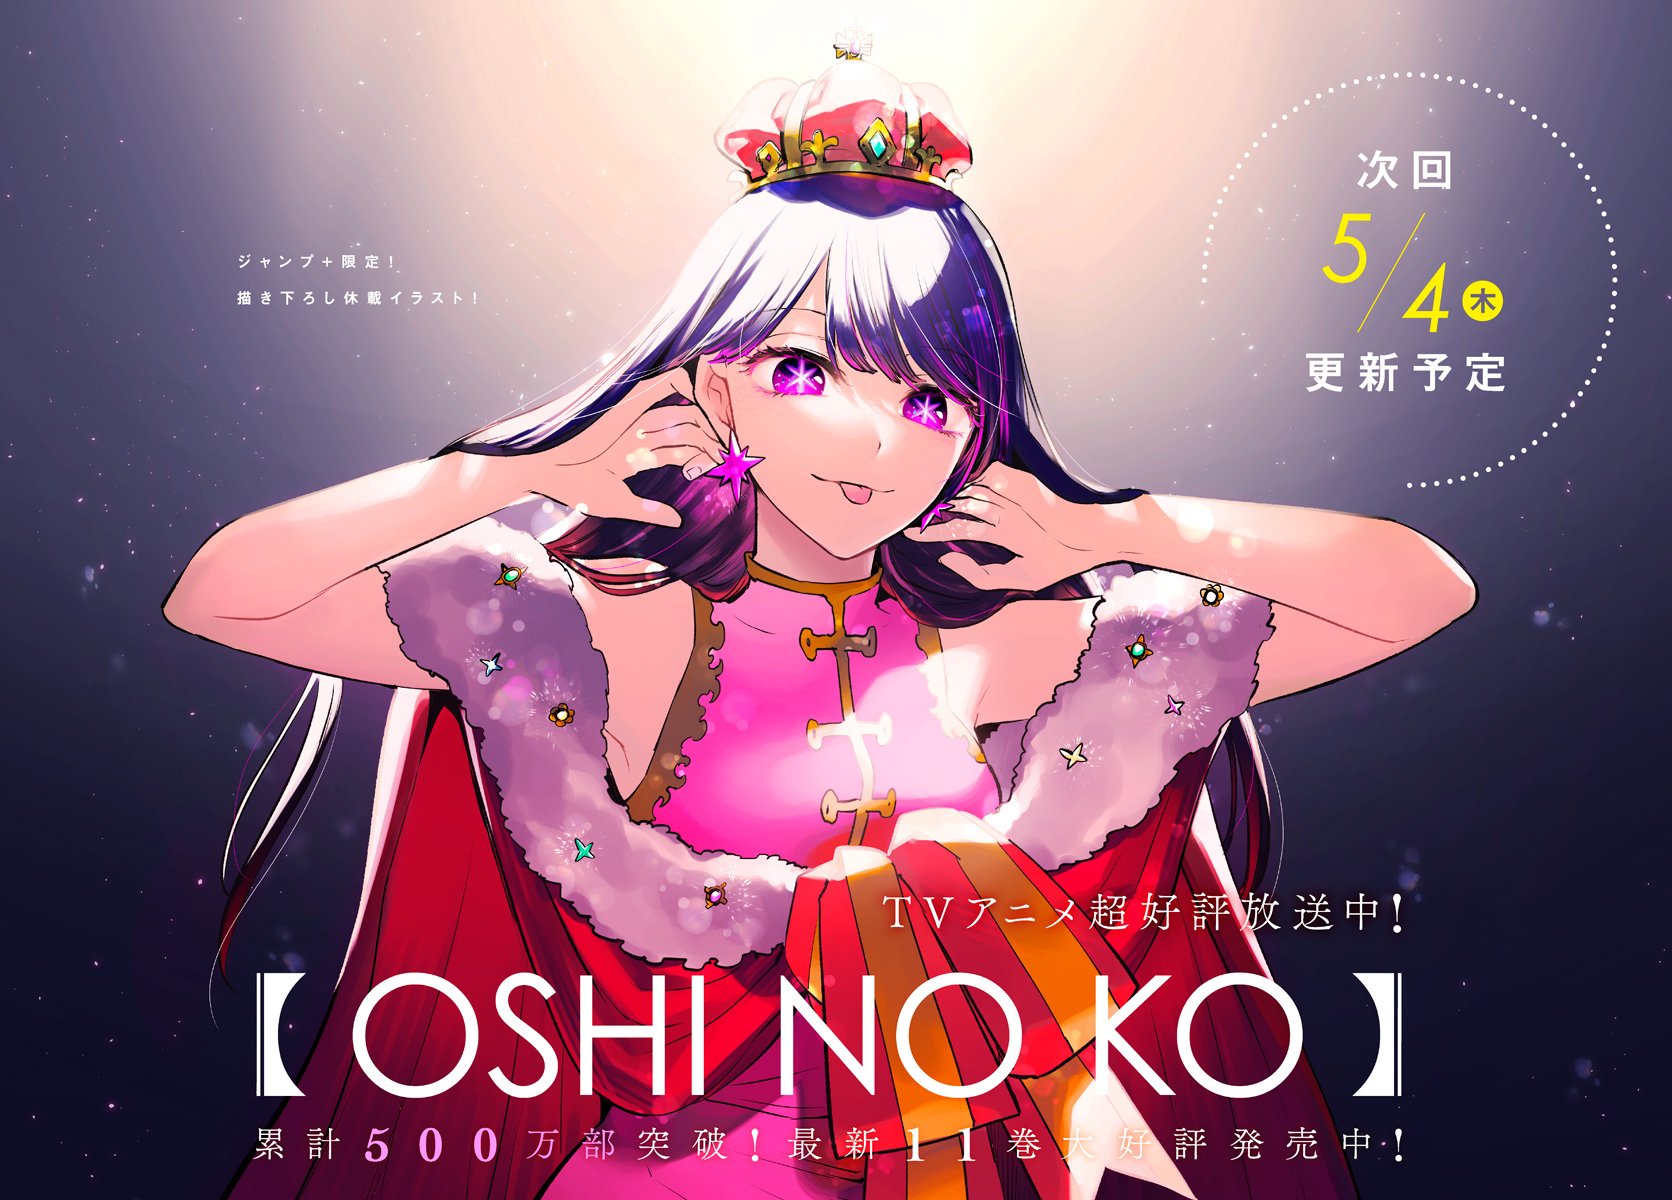 Anime News And Facts on X: New Oshi No Ko Visual Scan.   / X